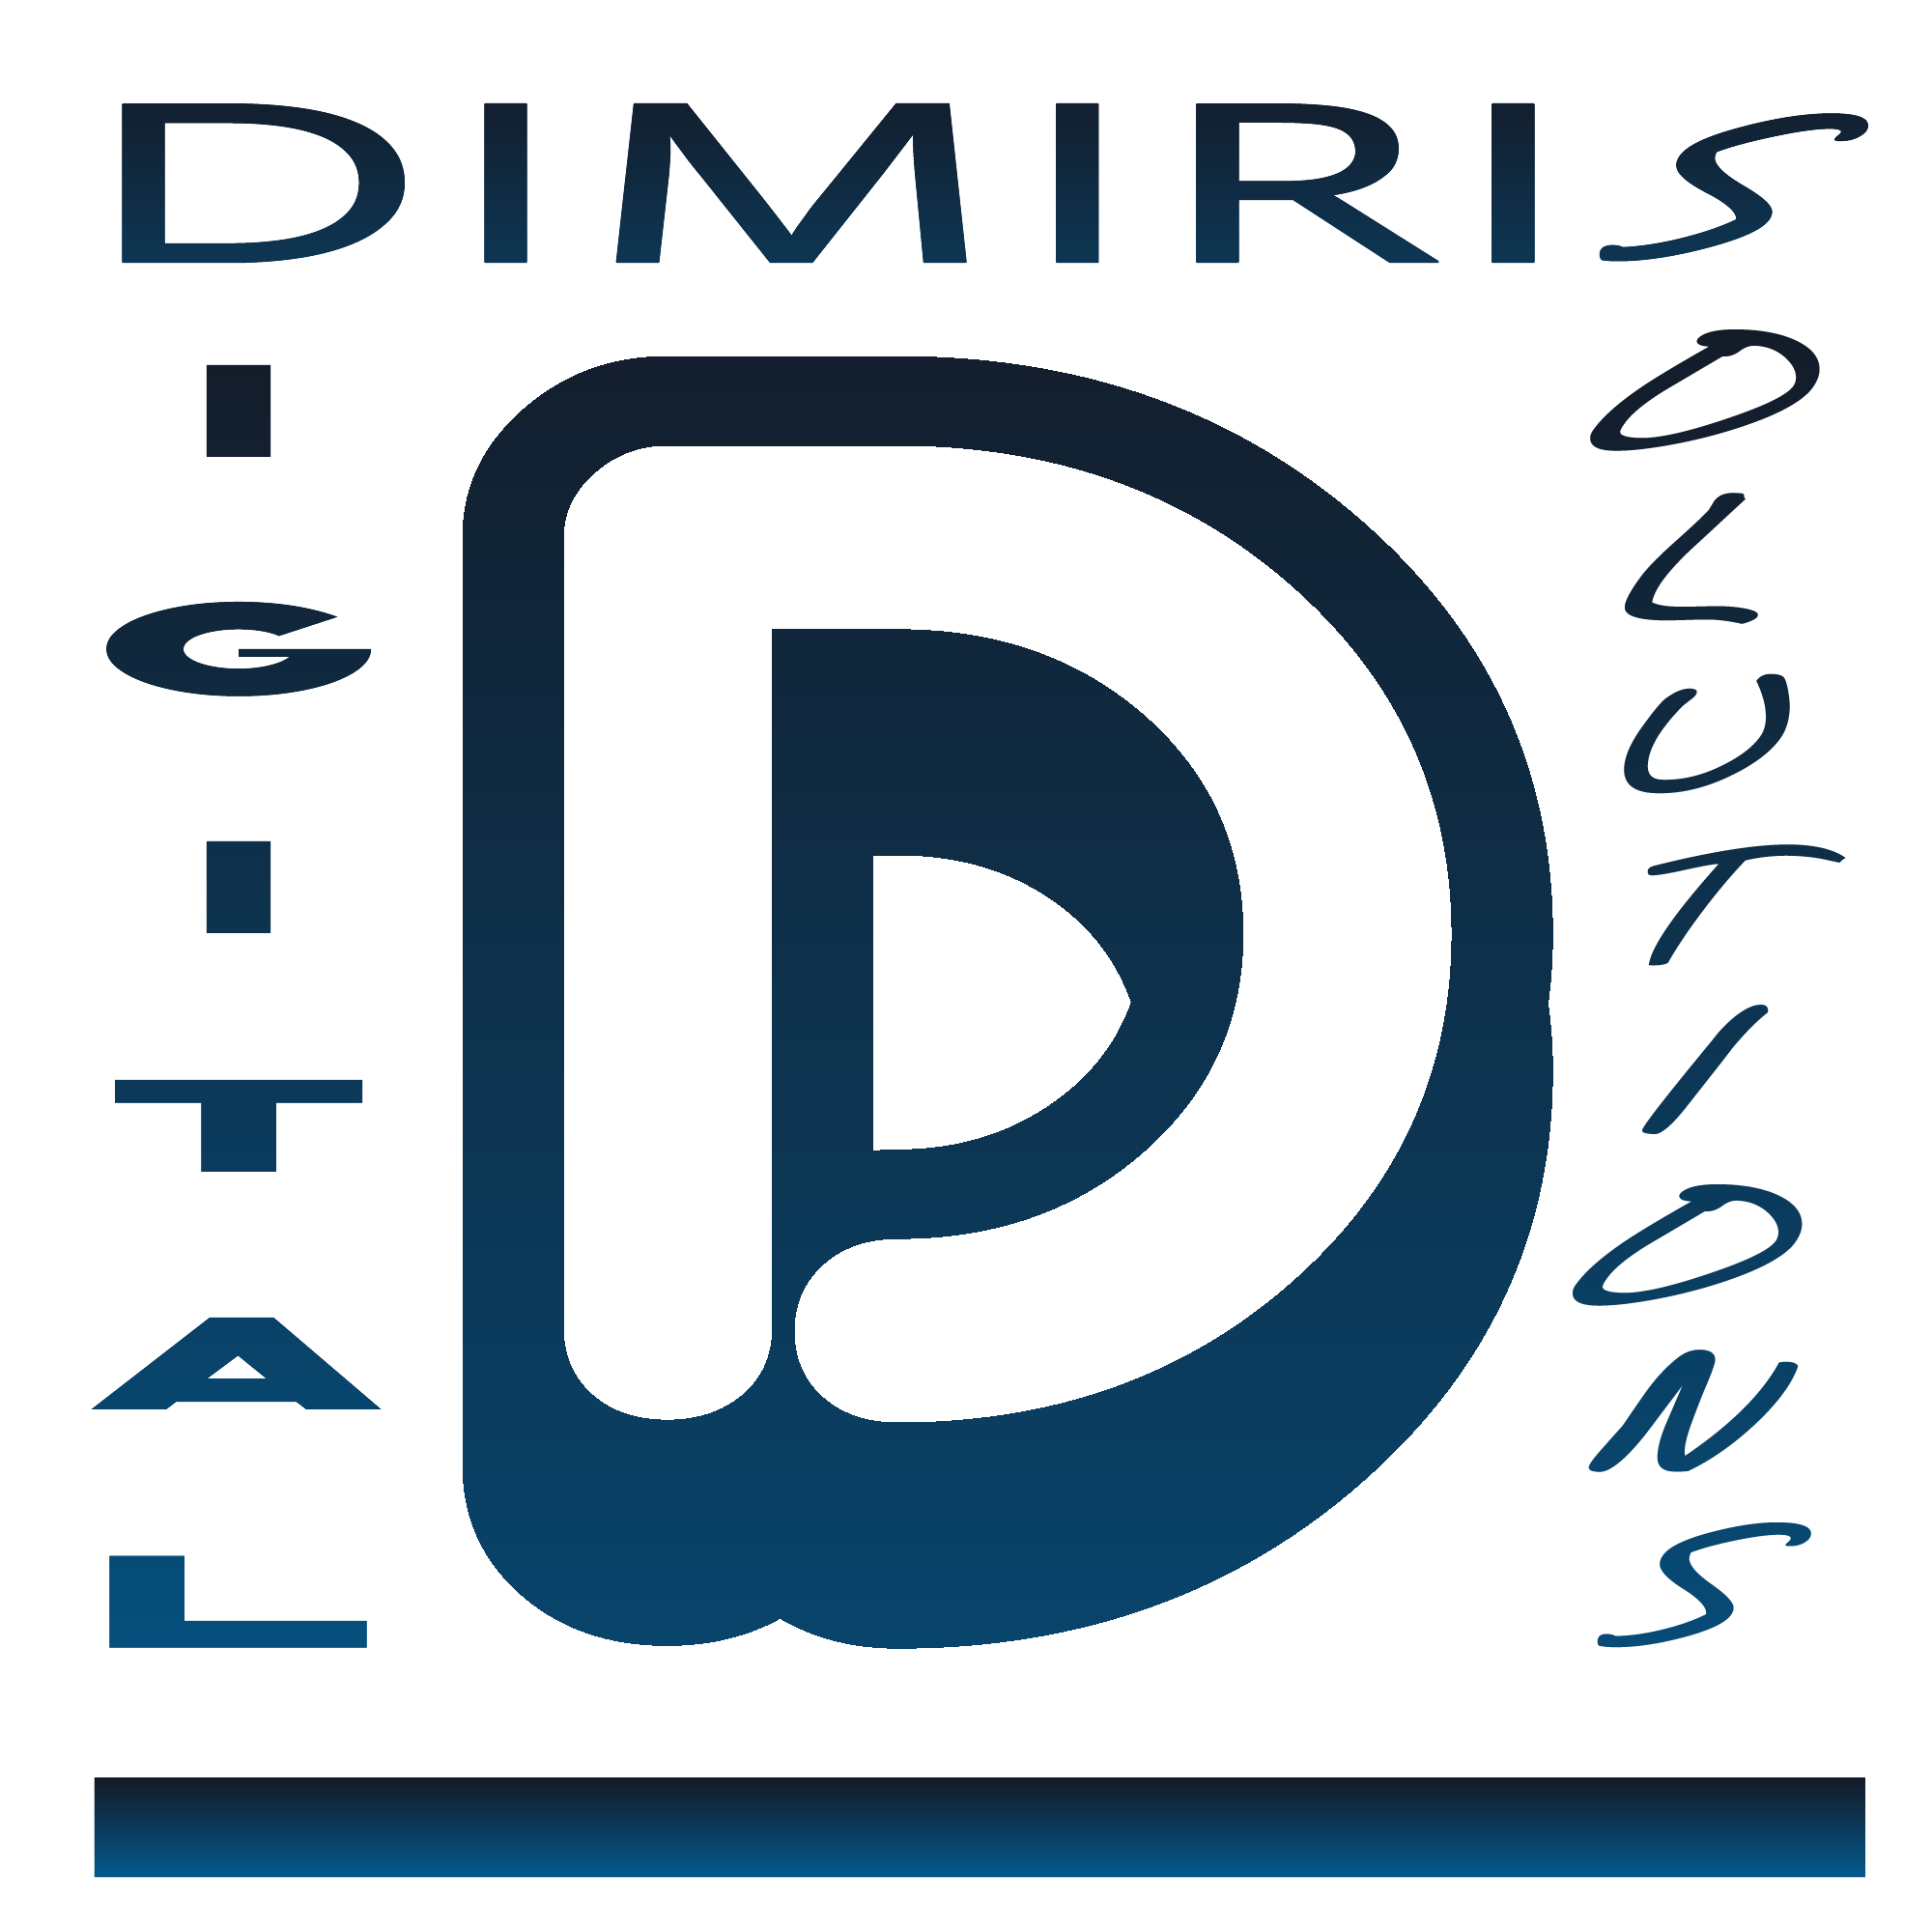 DDS - Trentino | Dimiris Digital Solutions